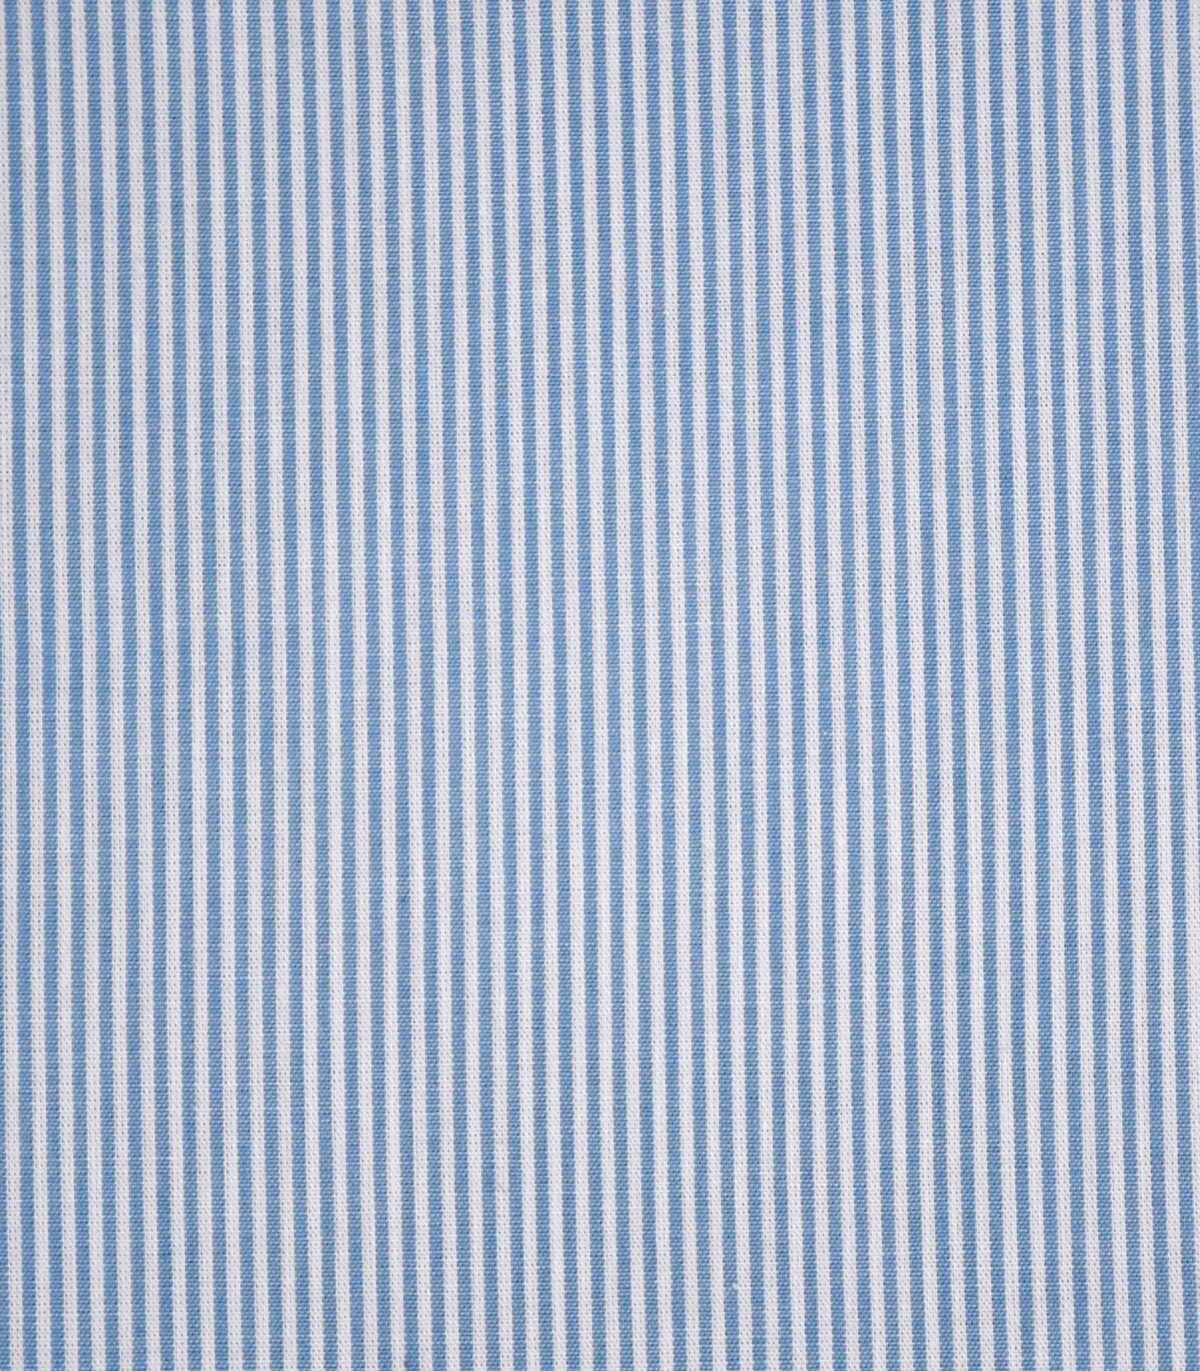 Blue & White Cotton Stripe Fabric